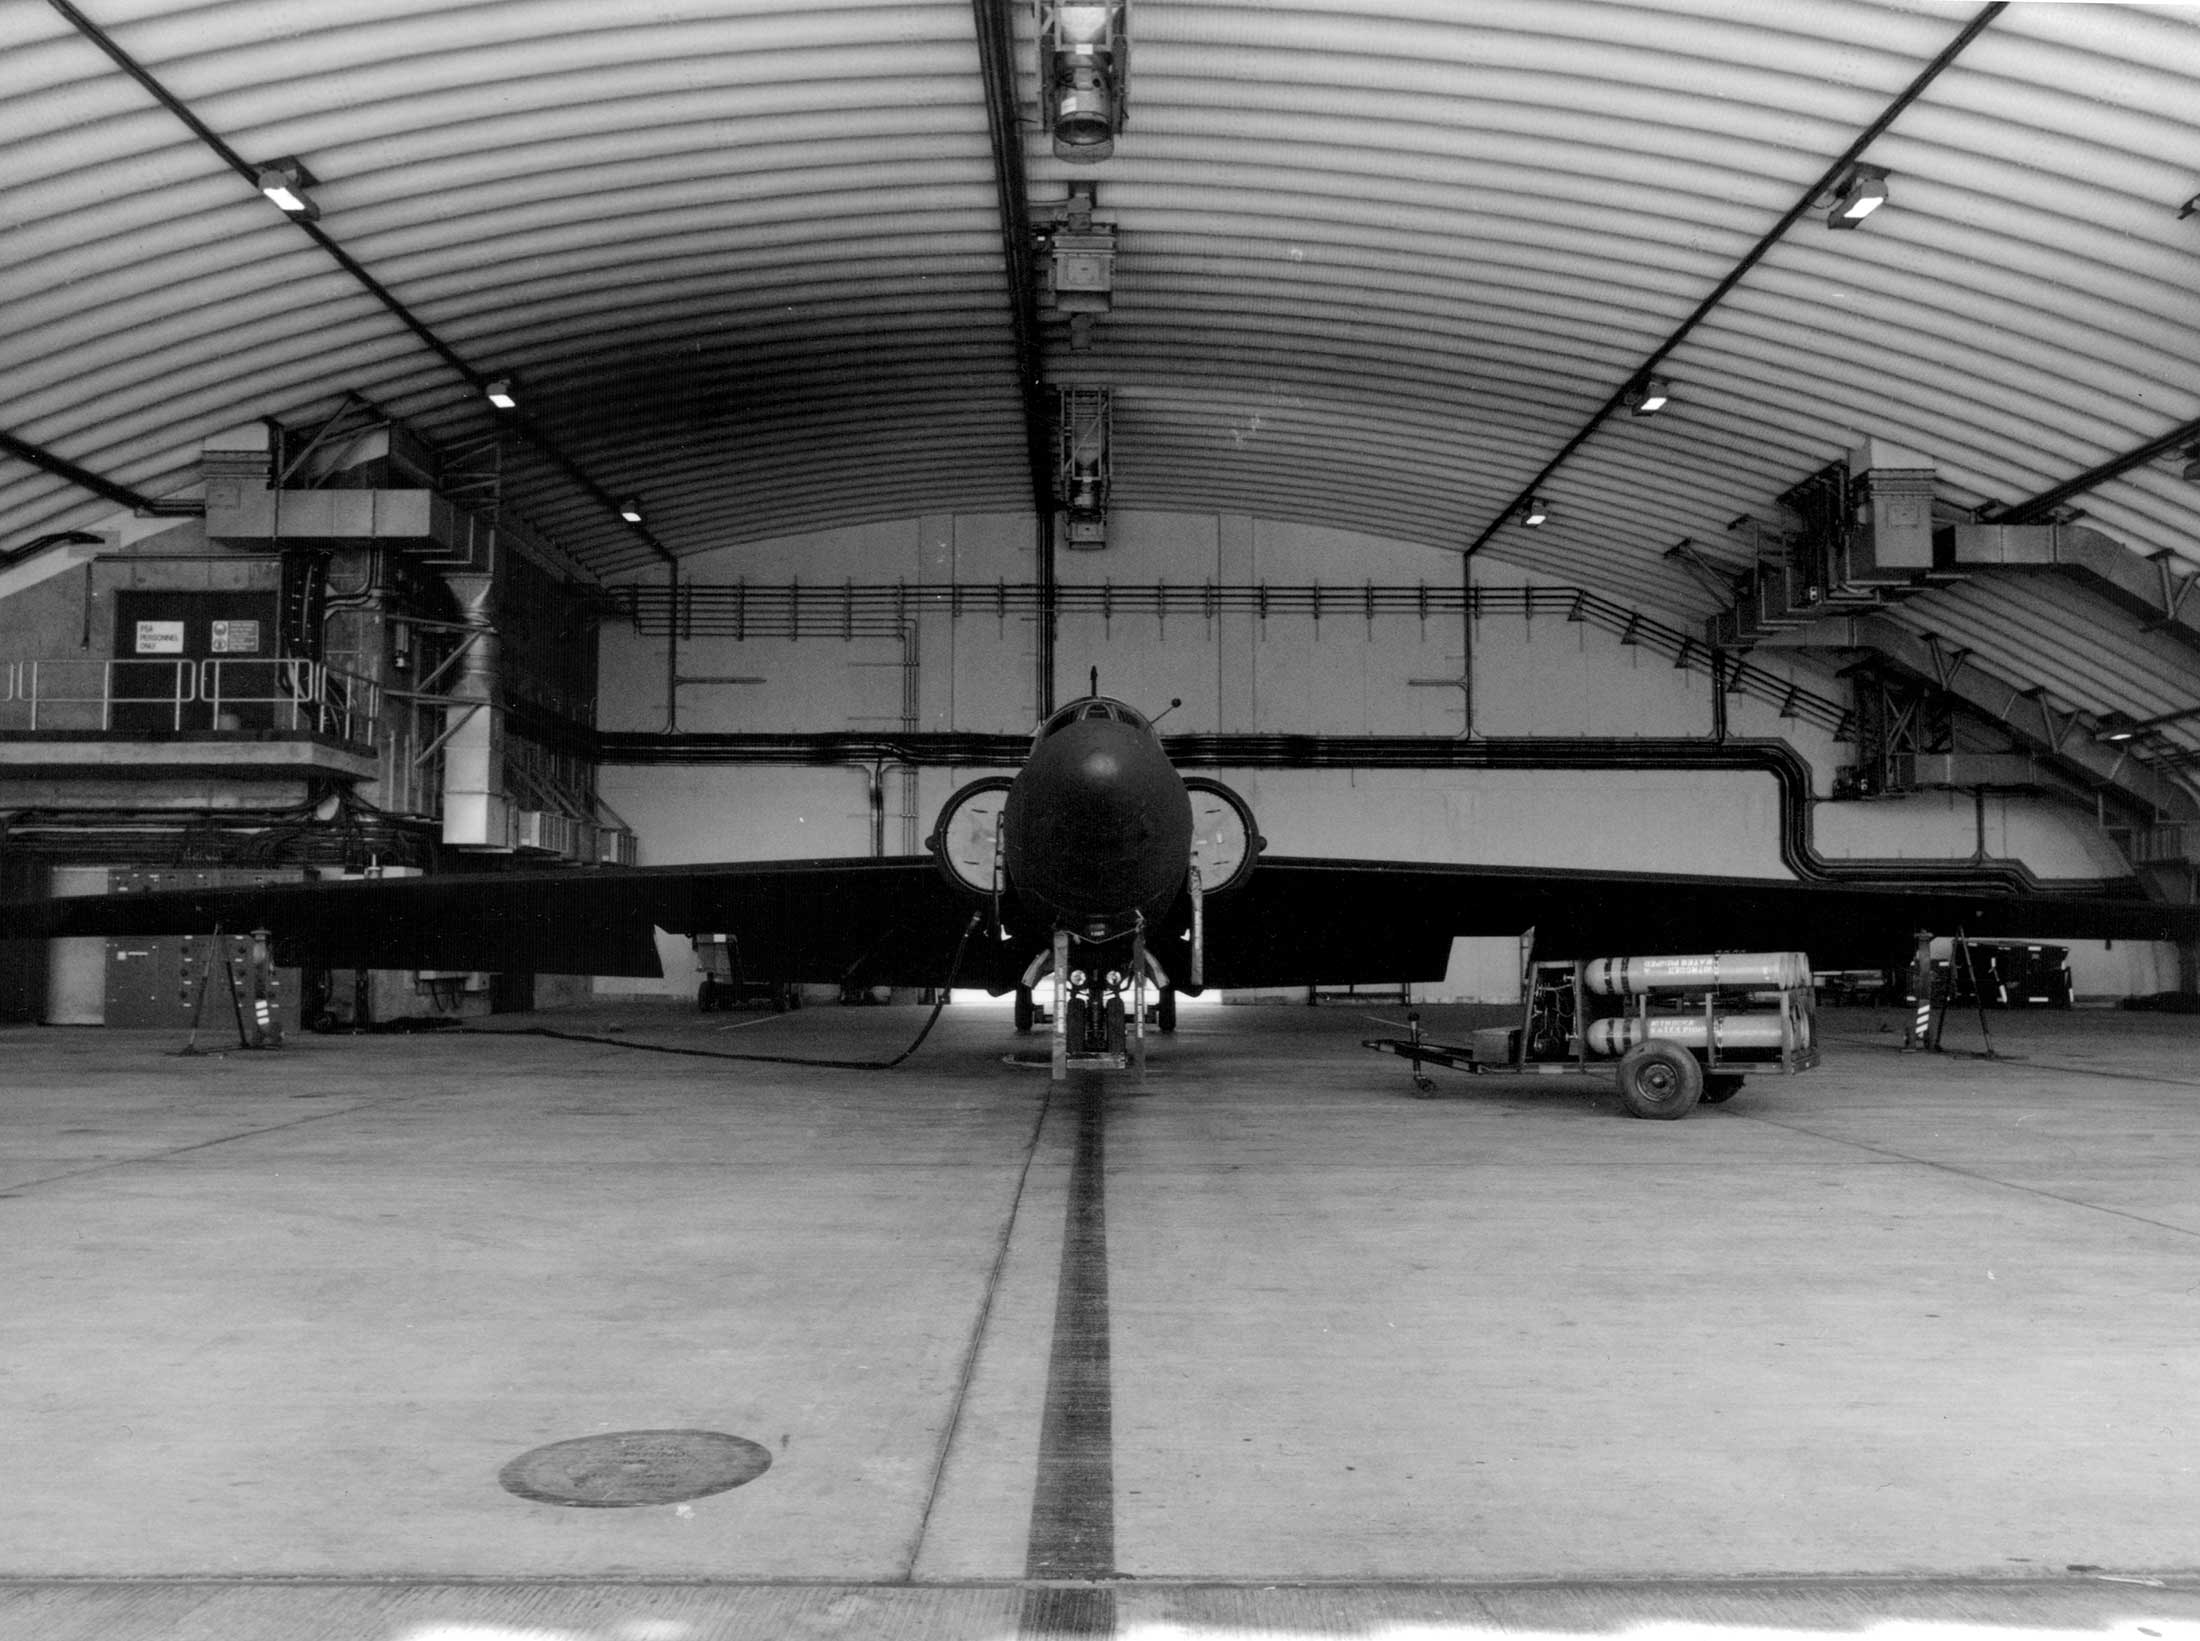 U2 Plane in hanger at Alconbury Weald